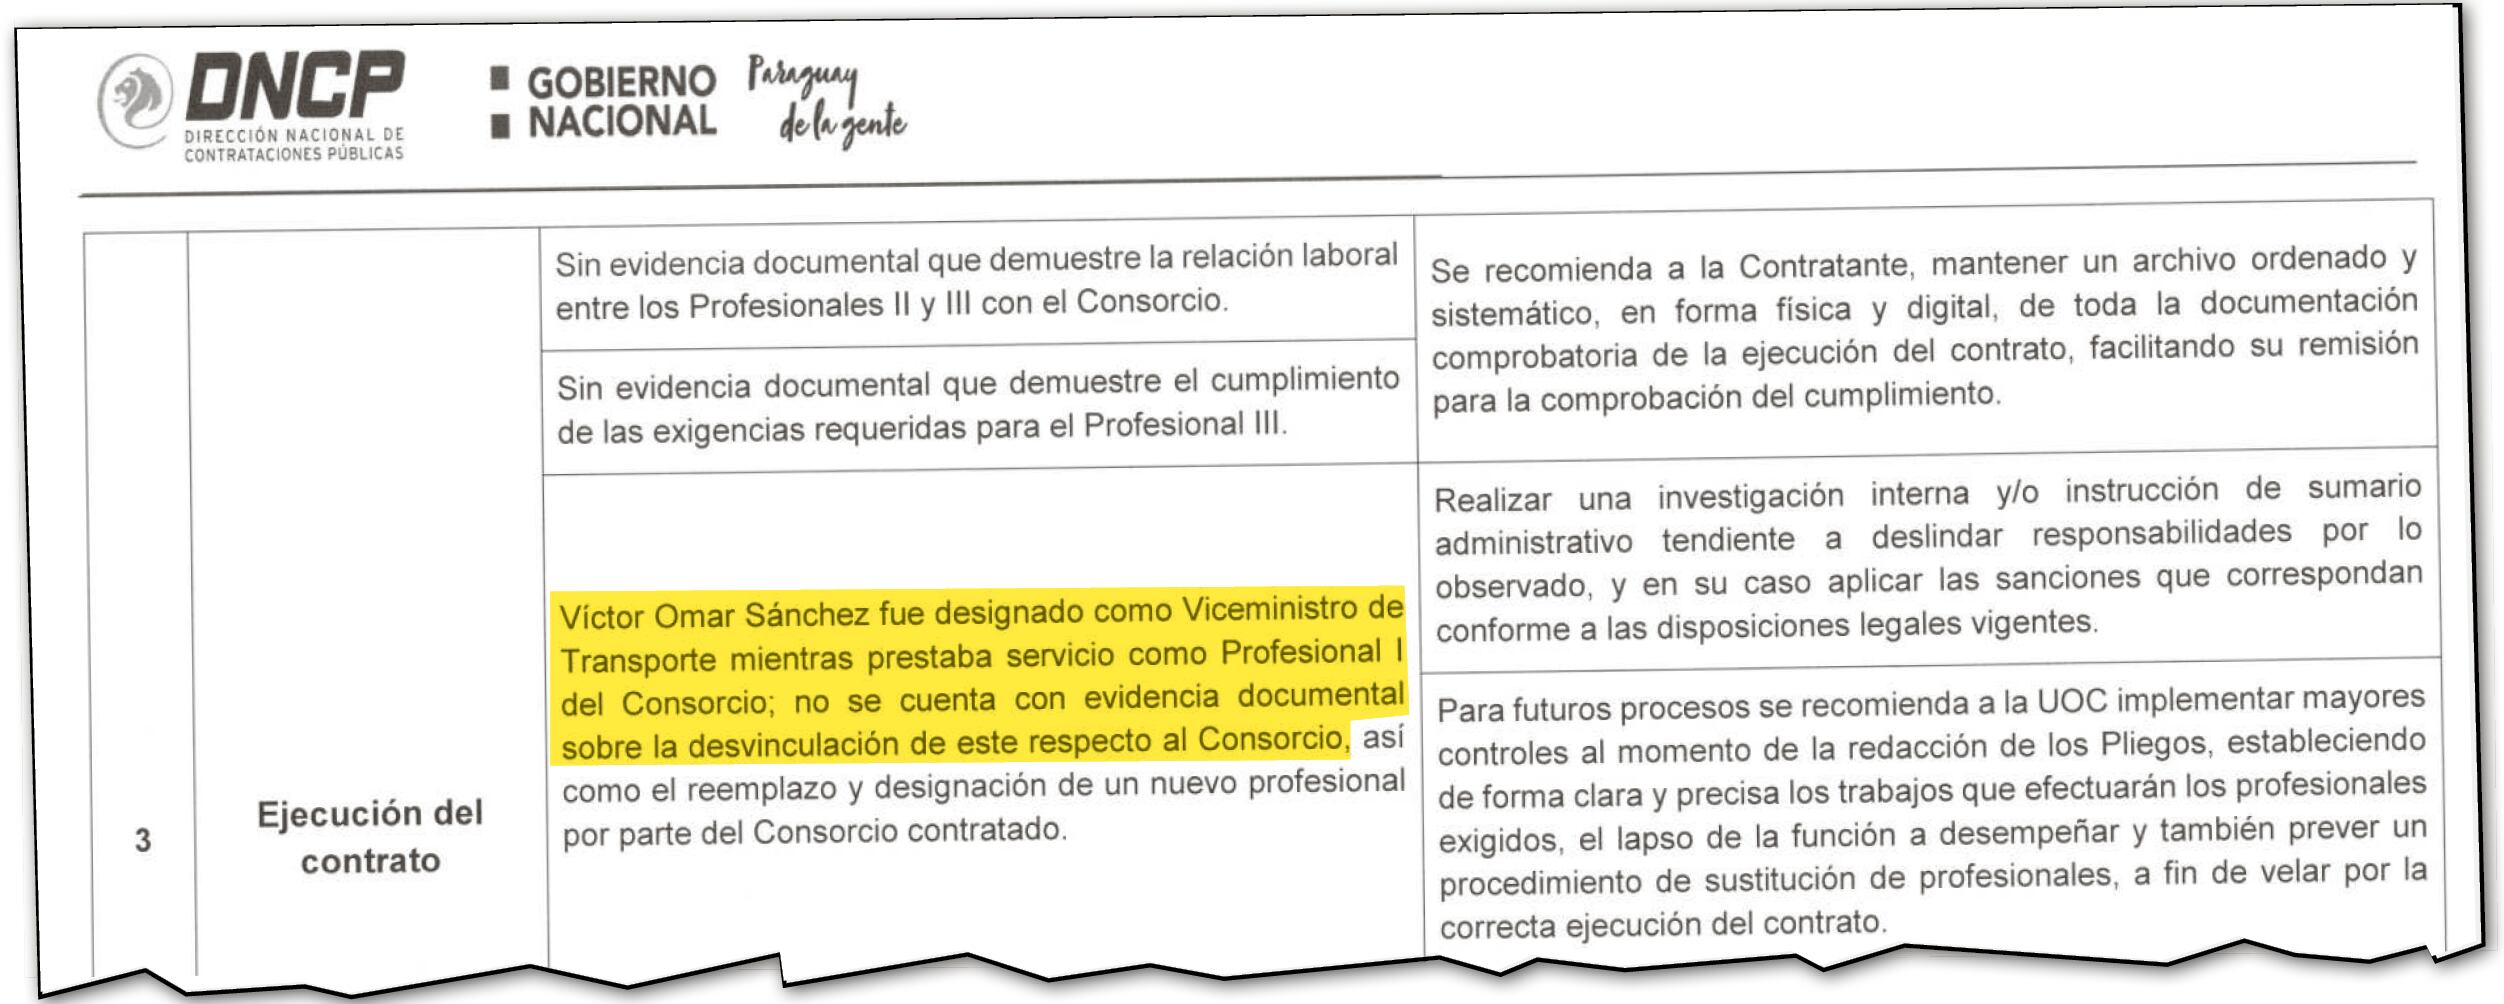 Facsímil del informe de Contrataciones que reporta que Víctor Sánchez era asesor de proveedora del centro de monitoreo cuando asumió el cargo de vicemonistro de Transporte. Reporta que detectó desvinculación de la firma, así como anomalías en la recepción y falta de control y exigencia en la ejecución del contrato.